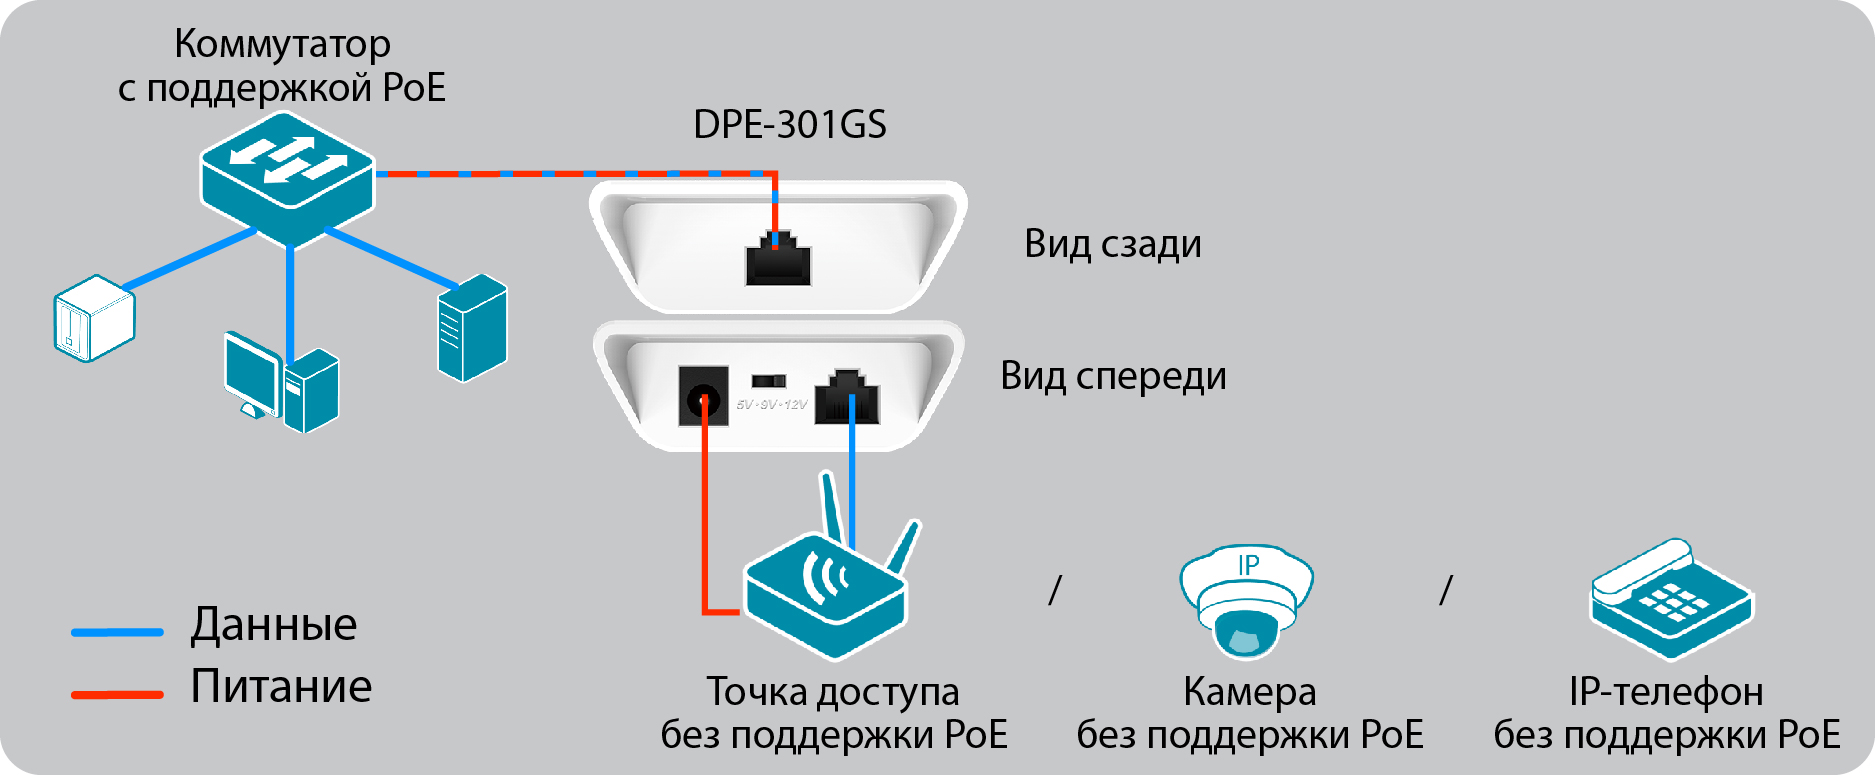 Схема подключения D-Link DPE-301GS